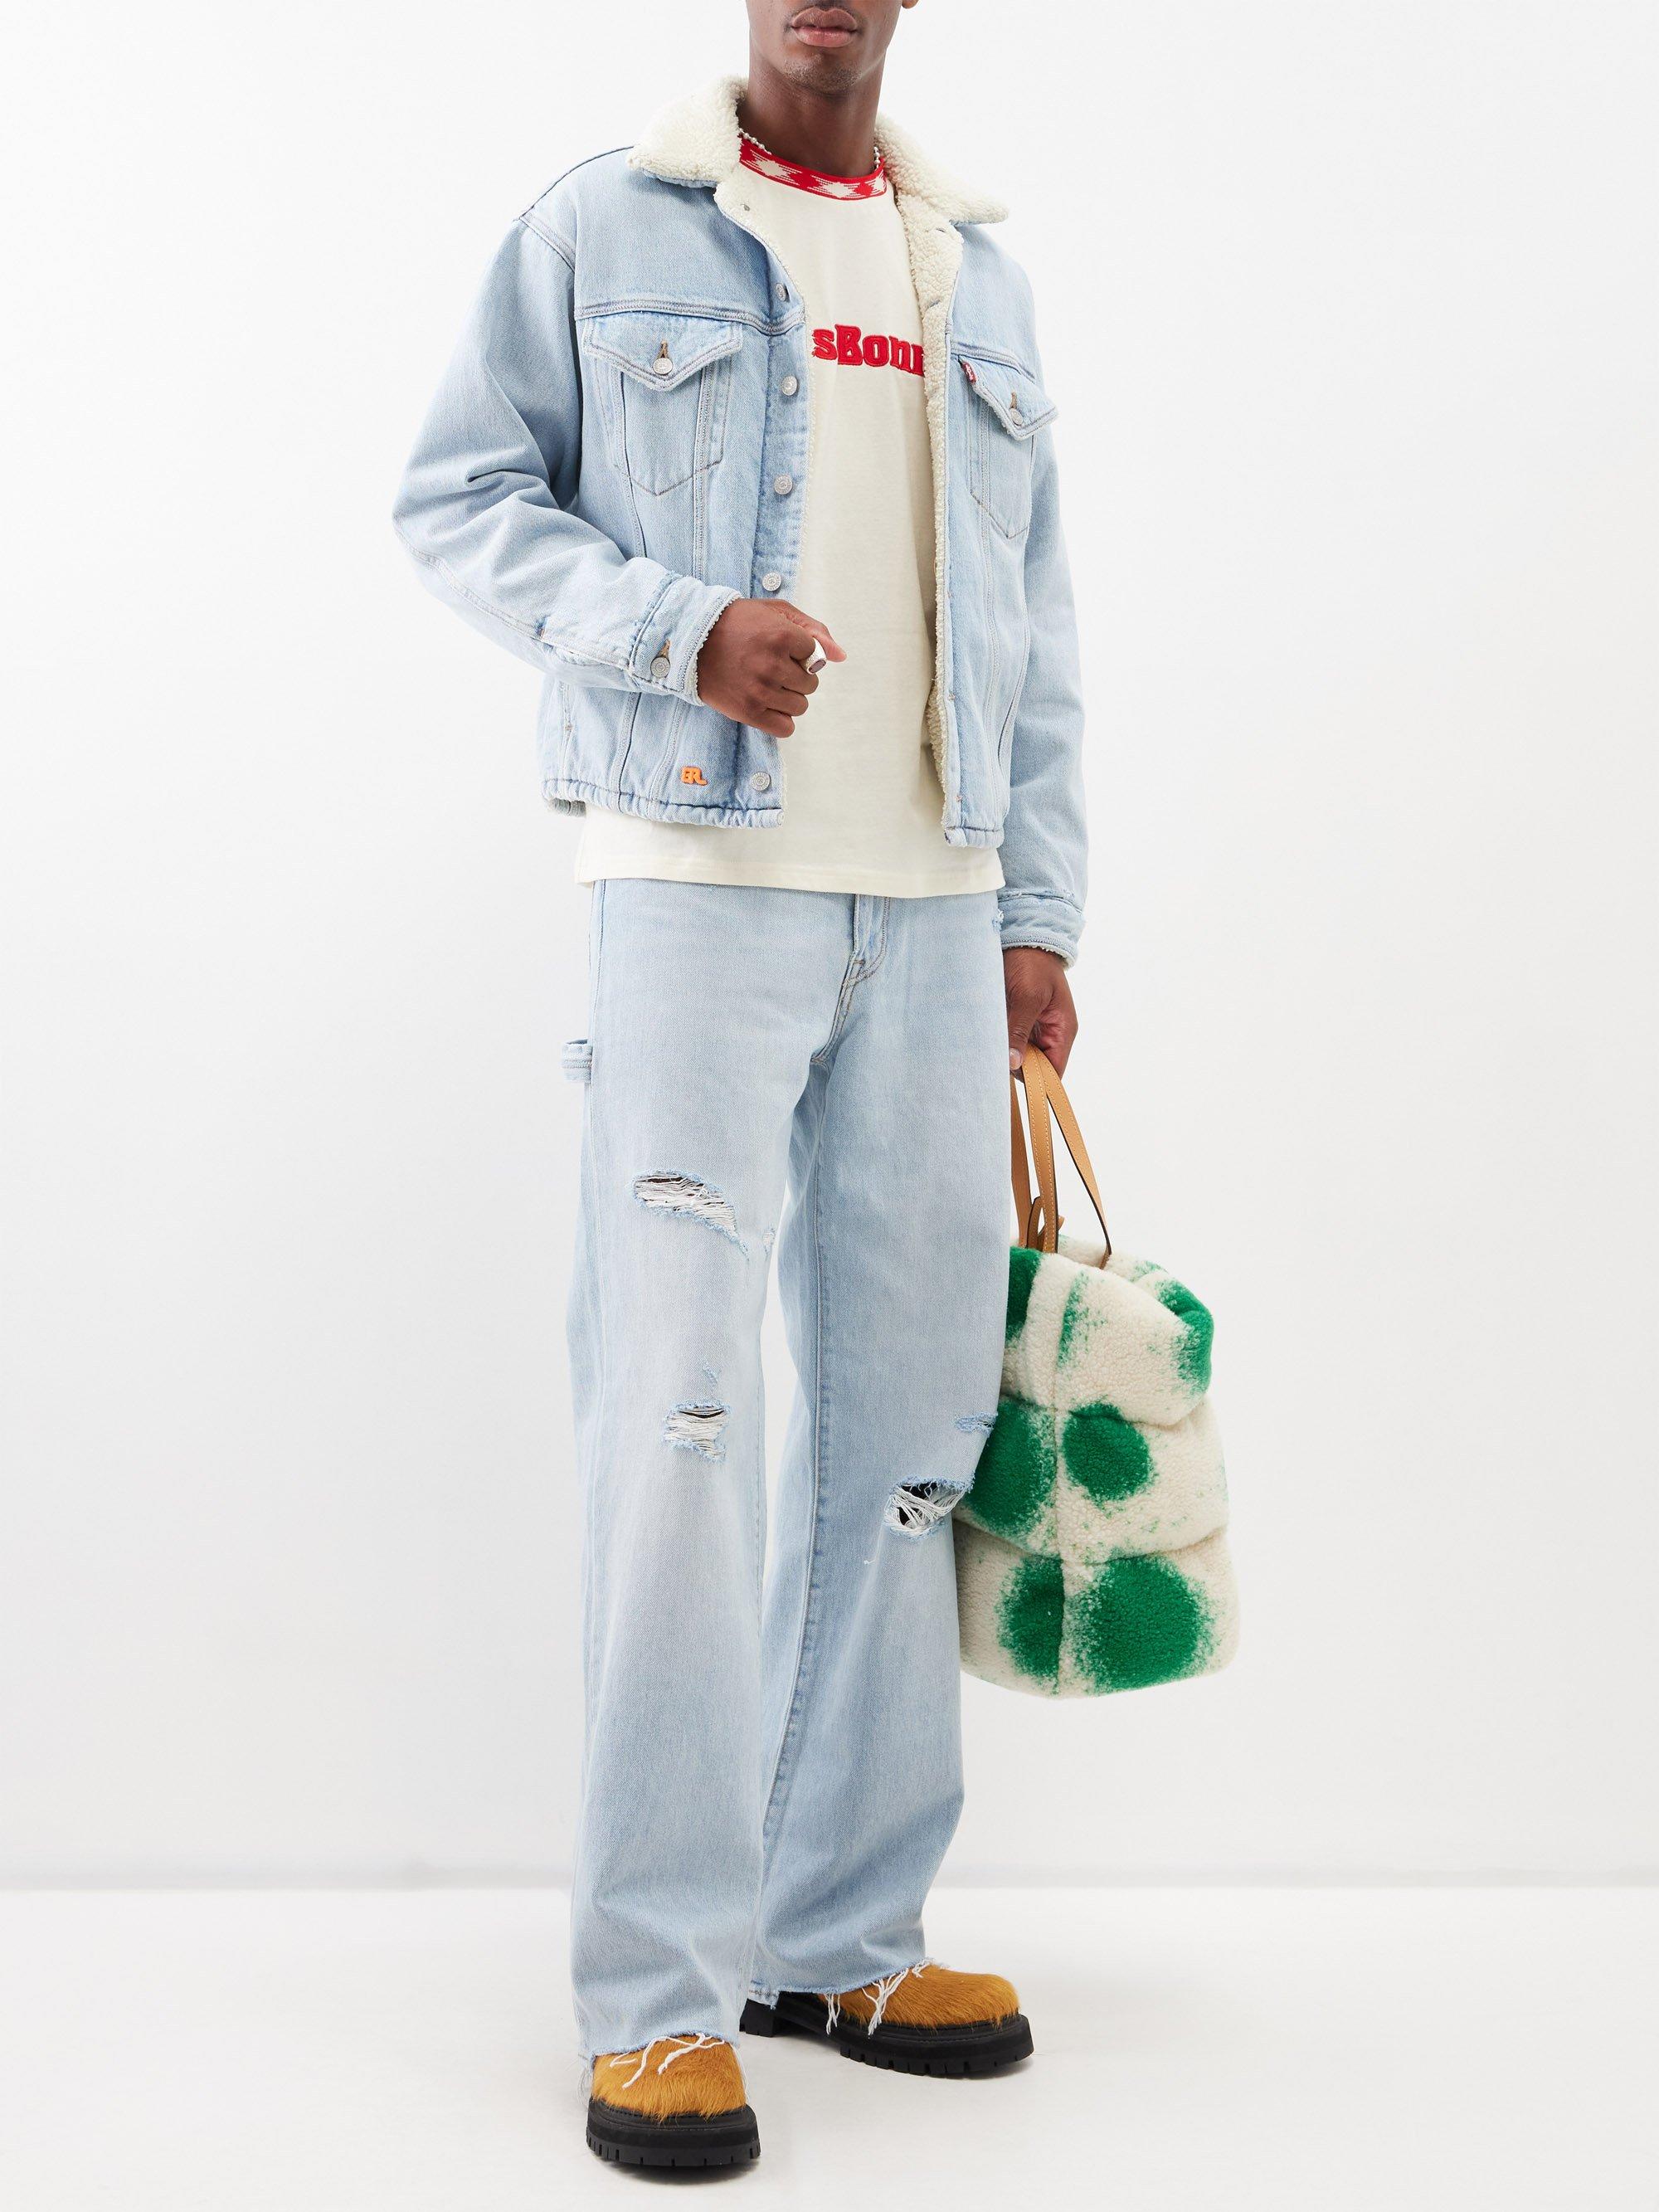 Calvin Klein Jeans Men's Sherpa Lined Denim Jacket - Macy's